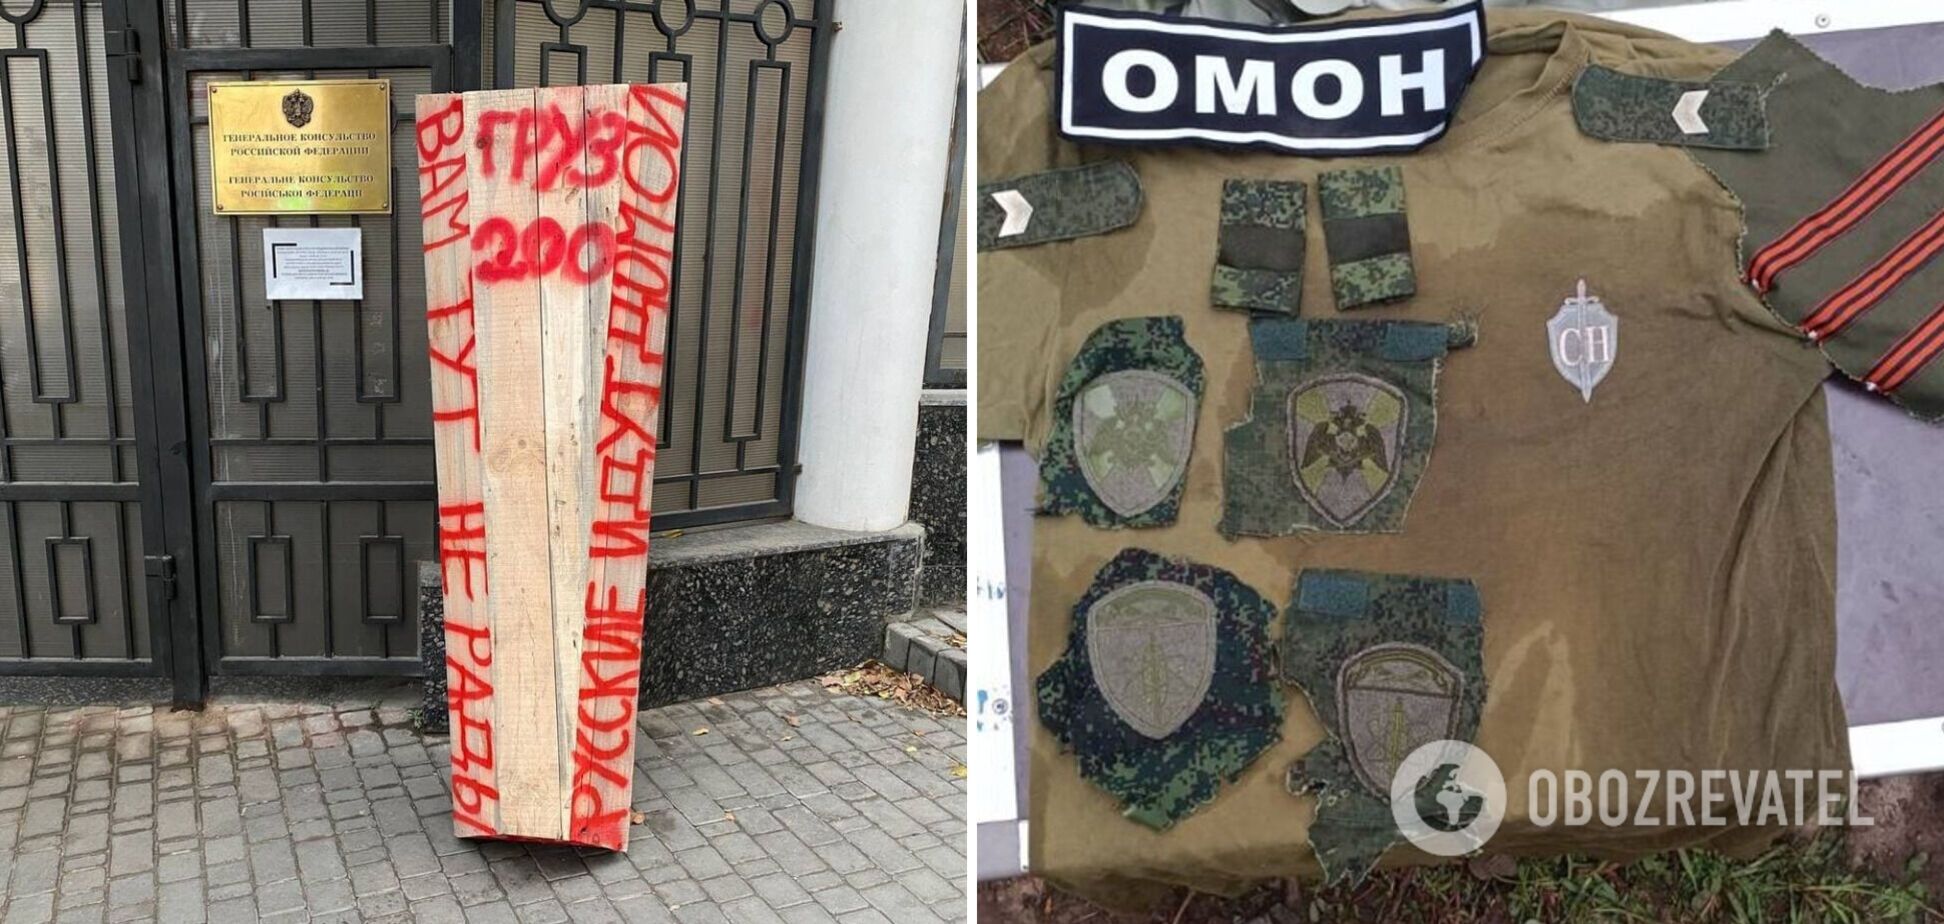 'Критически не хватает пушечного мяса?' В Украине обнаружили шевроны, которые в РФ носят охранники атомных станций. Фото